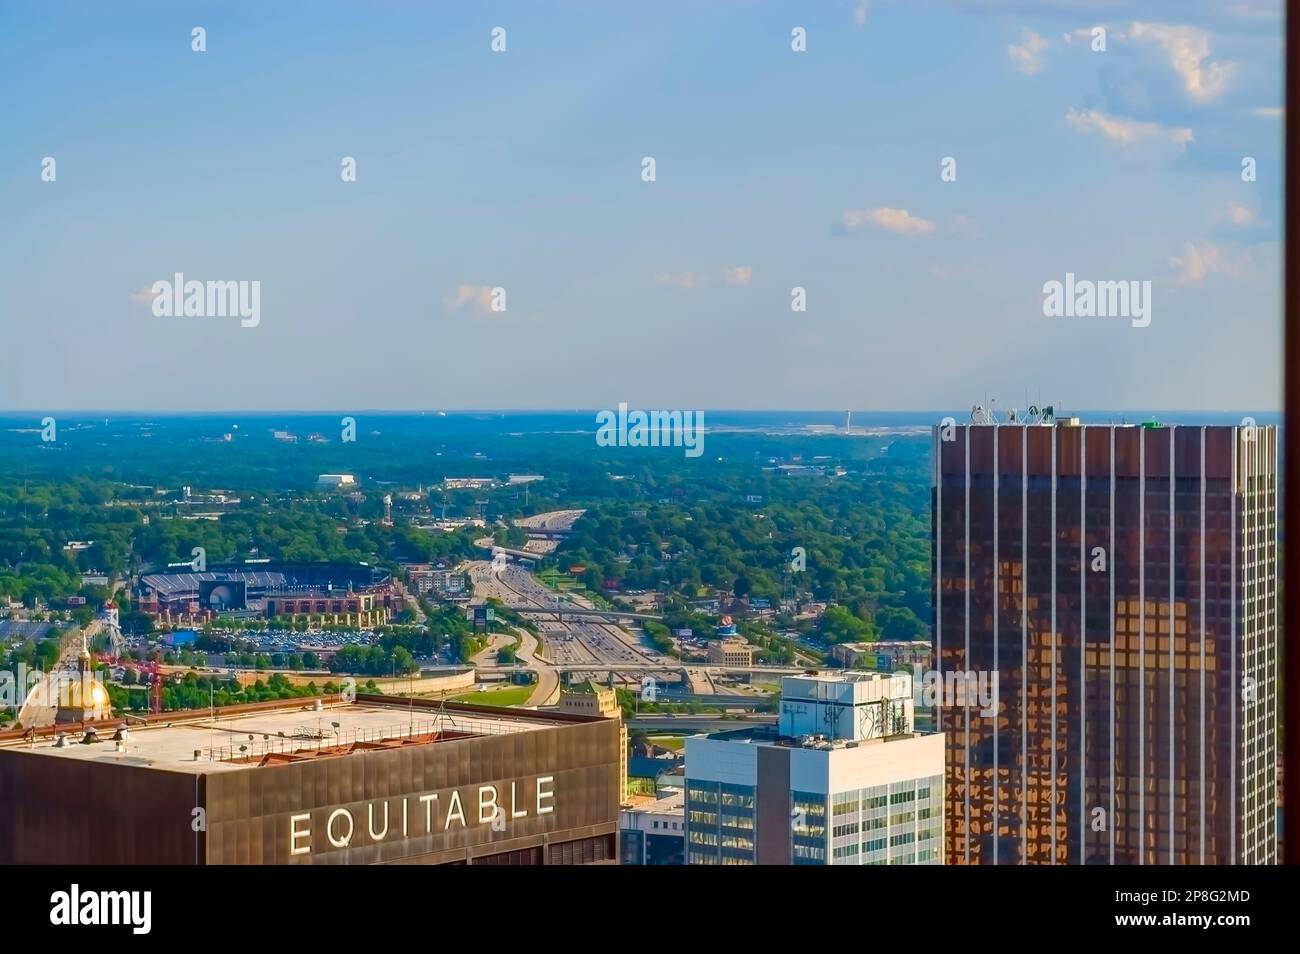 Die Interstate 85 schlängelt sich durch Atlanta City. Georgia State Center Parc Stadium und andere Hochhäuser sind auf dem Bild zu sehen. Stockfoto